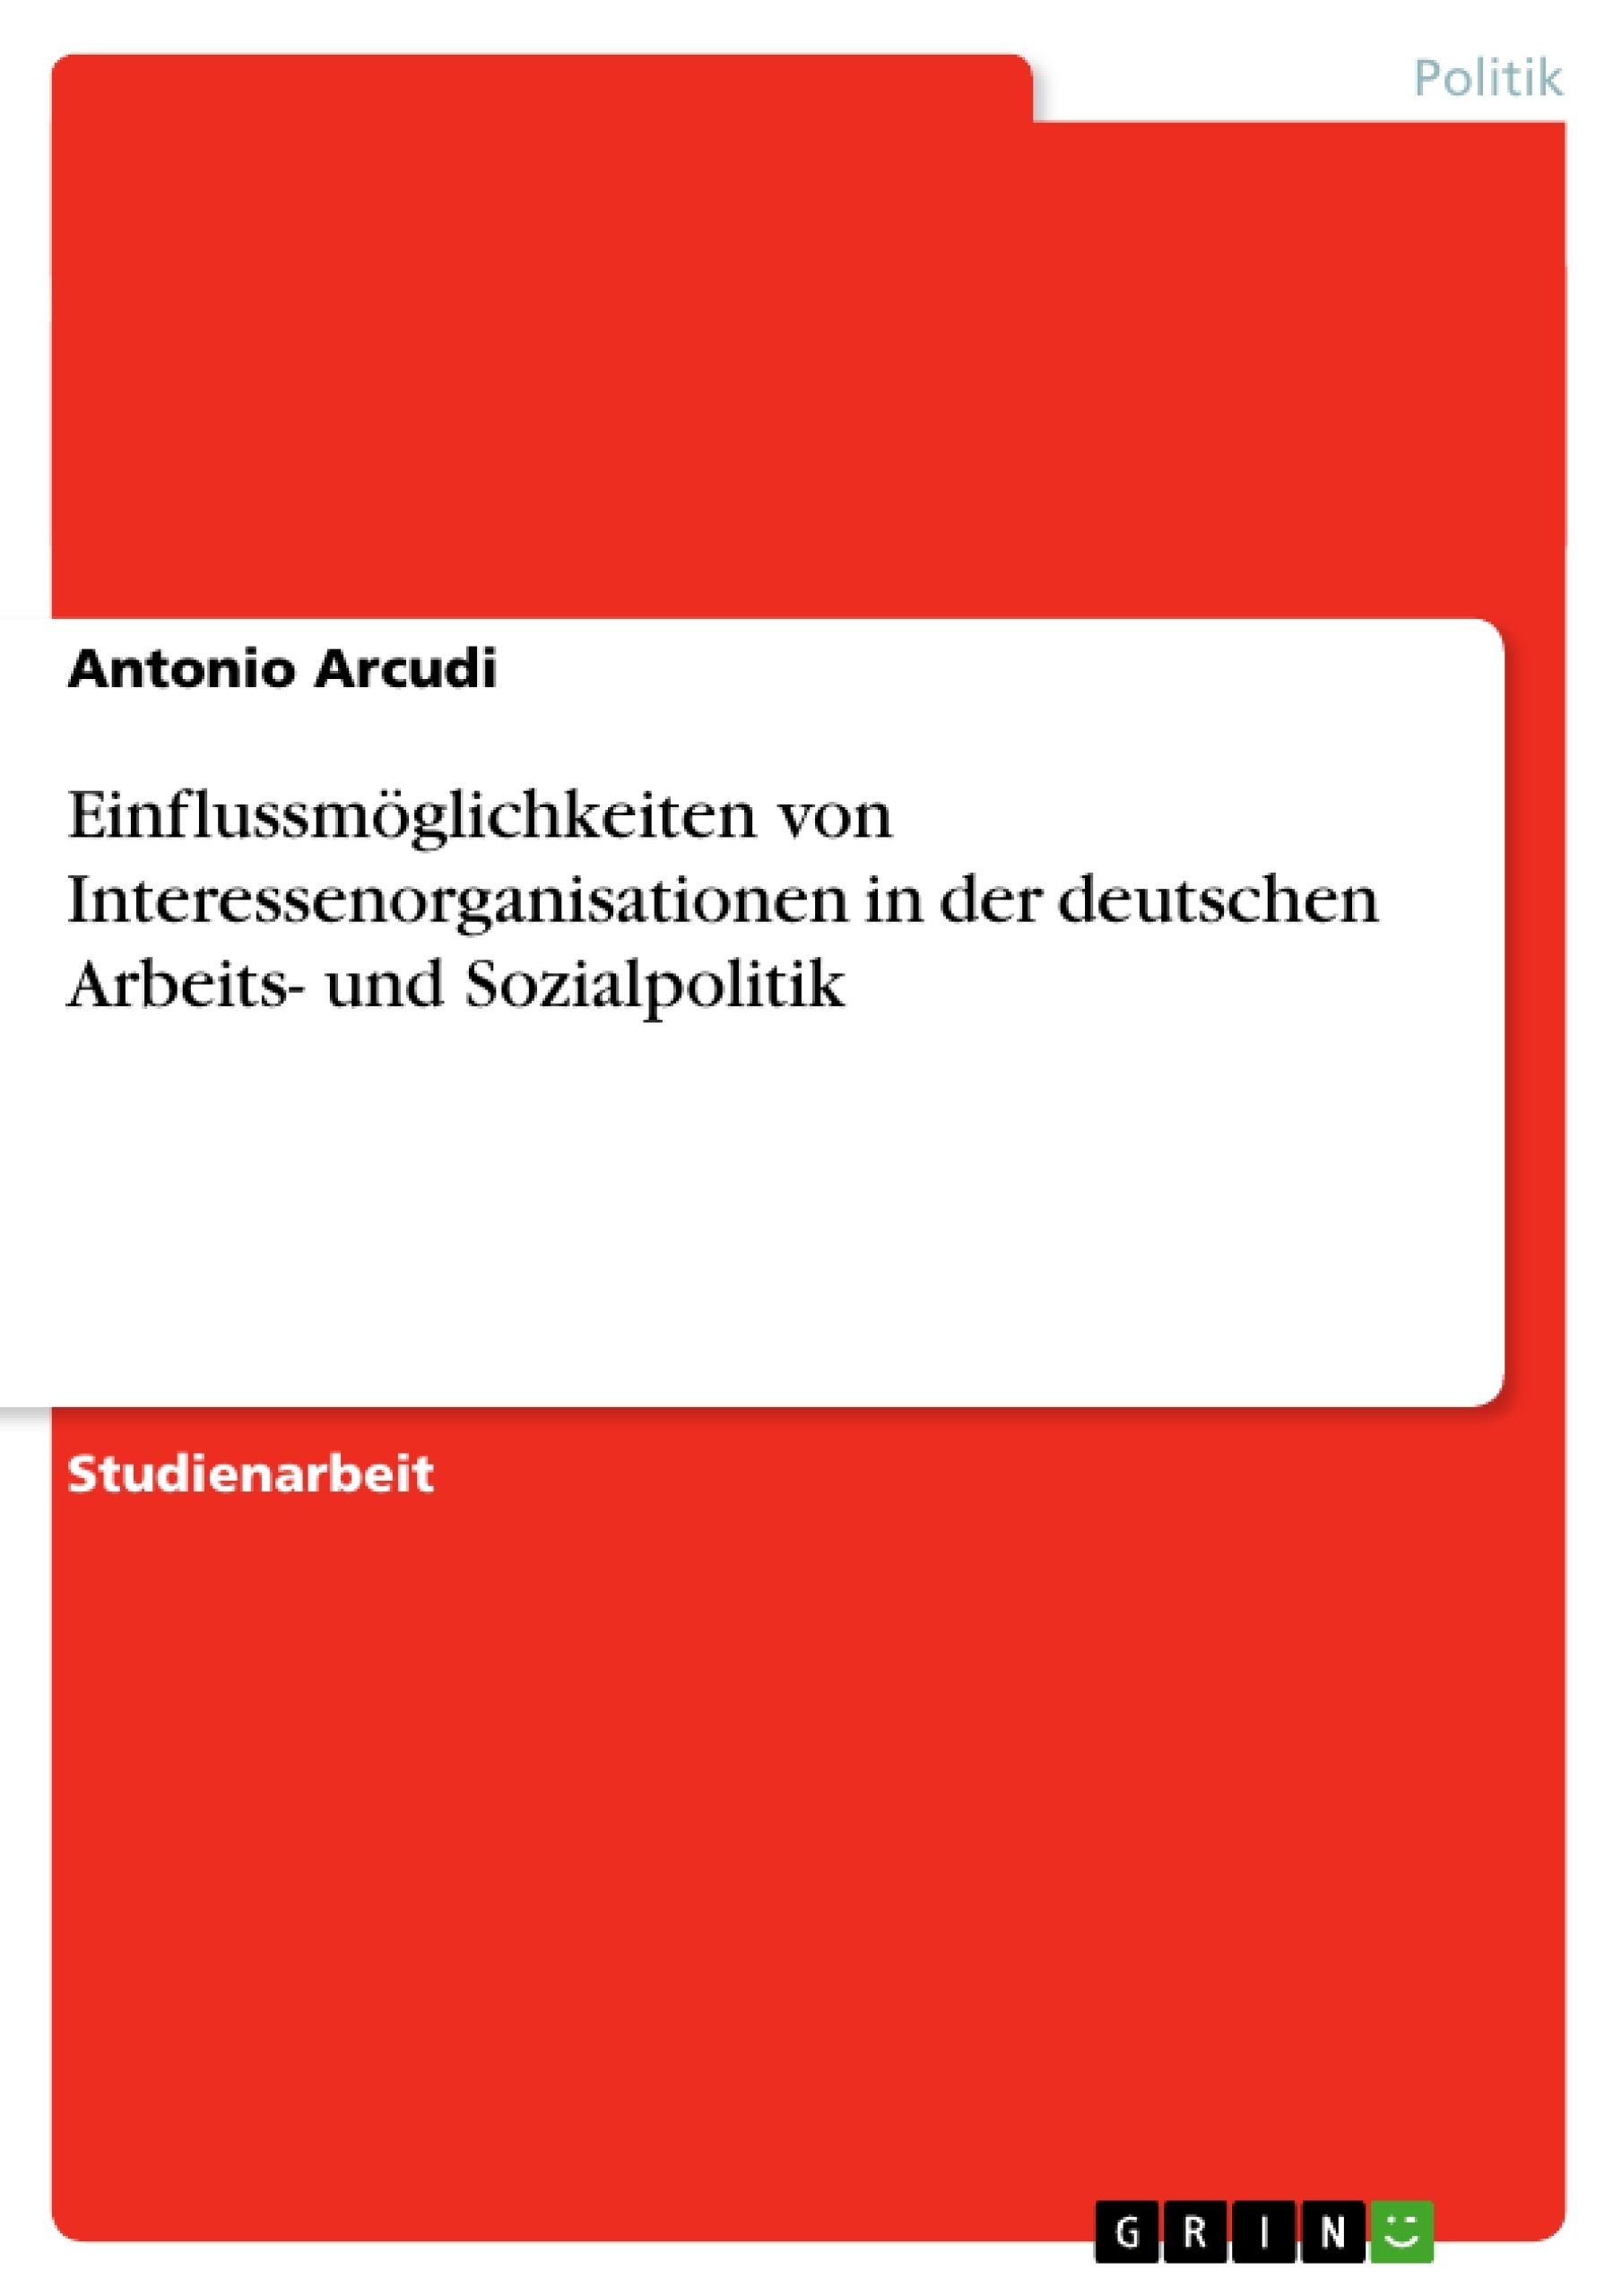 Título: Einflussmöglichkeiten von Interessenorganisationen in der deutschen Arbeits- und Sozialpolitik